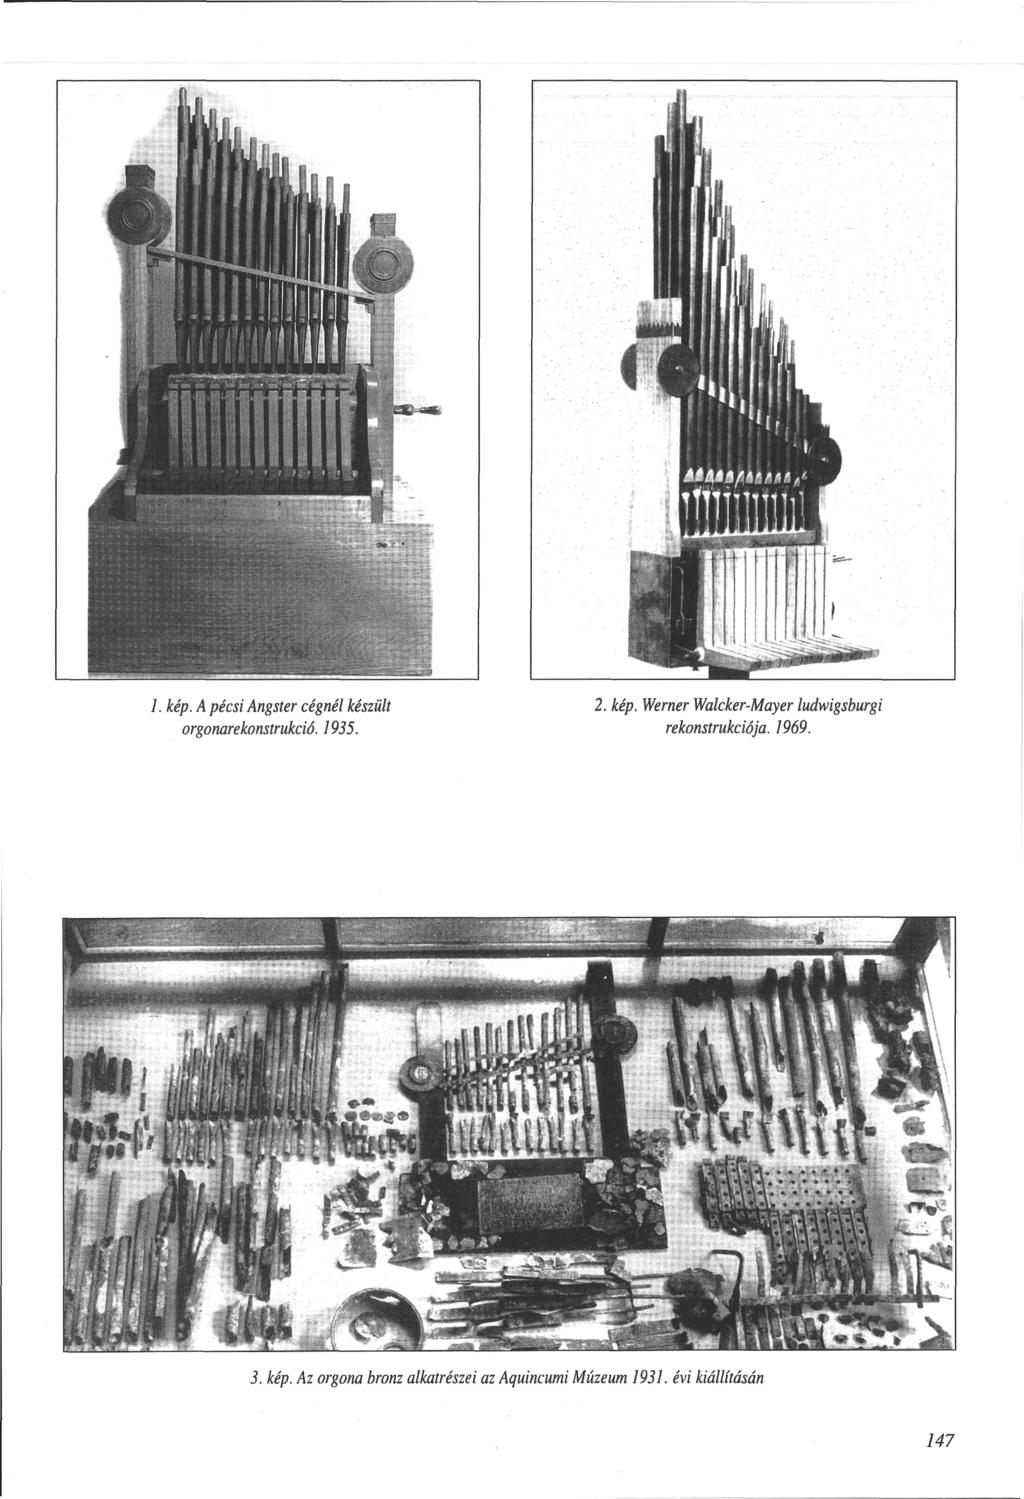 1. kép. A pécsi Angster cégnél készült orgonarekonstrukció. 1935. 2. kép. Werner Walcker-Mayer ludwigsburgi rekonstrukciója.